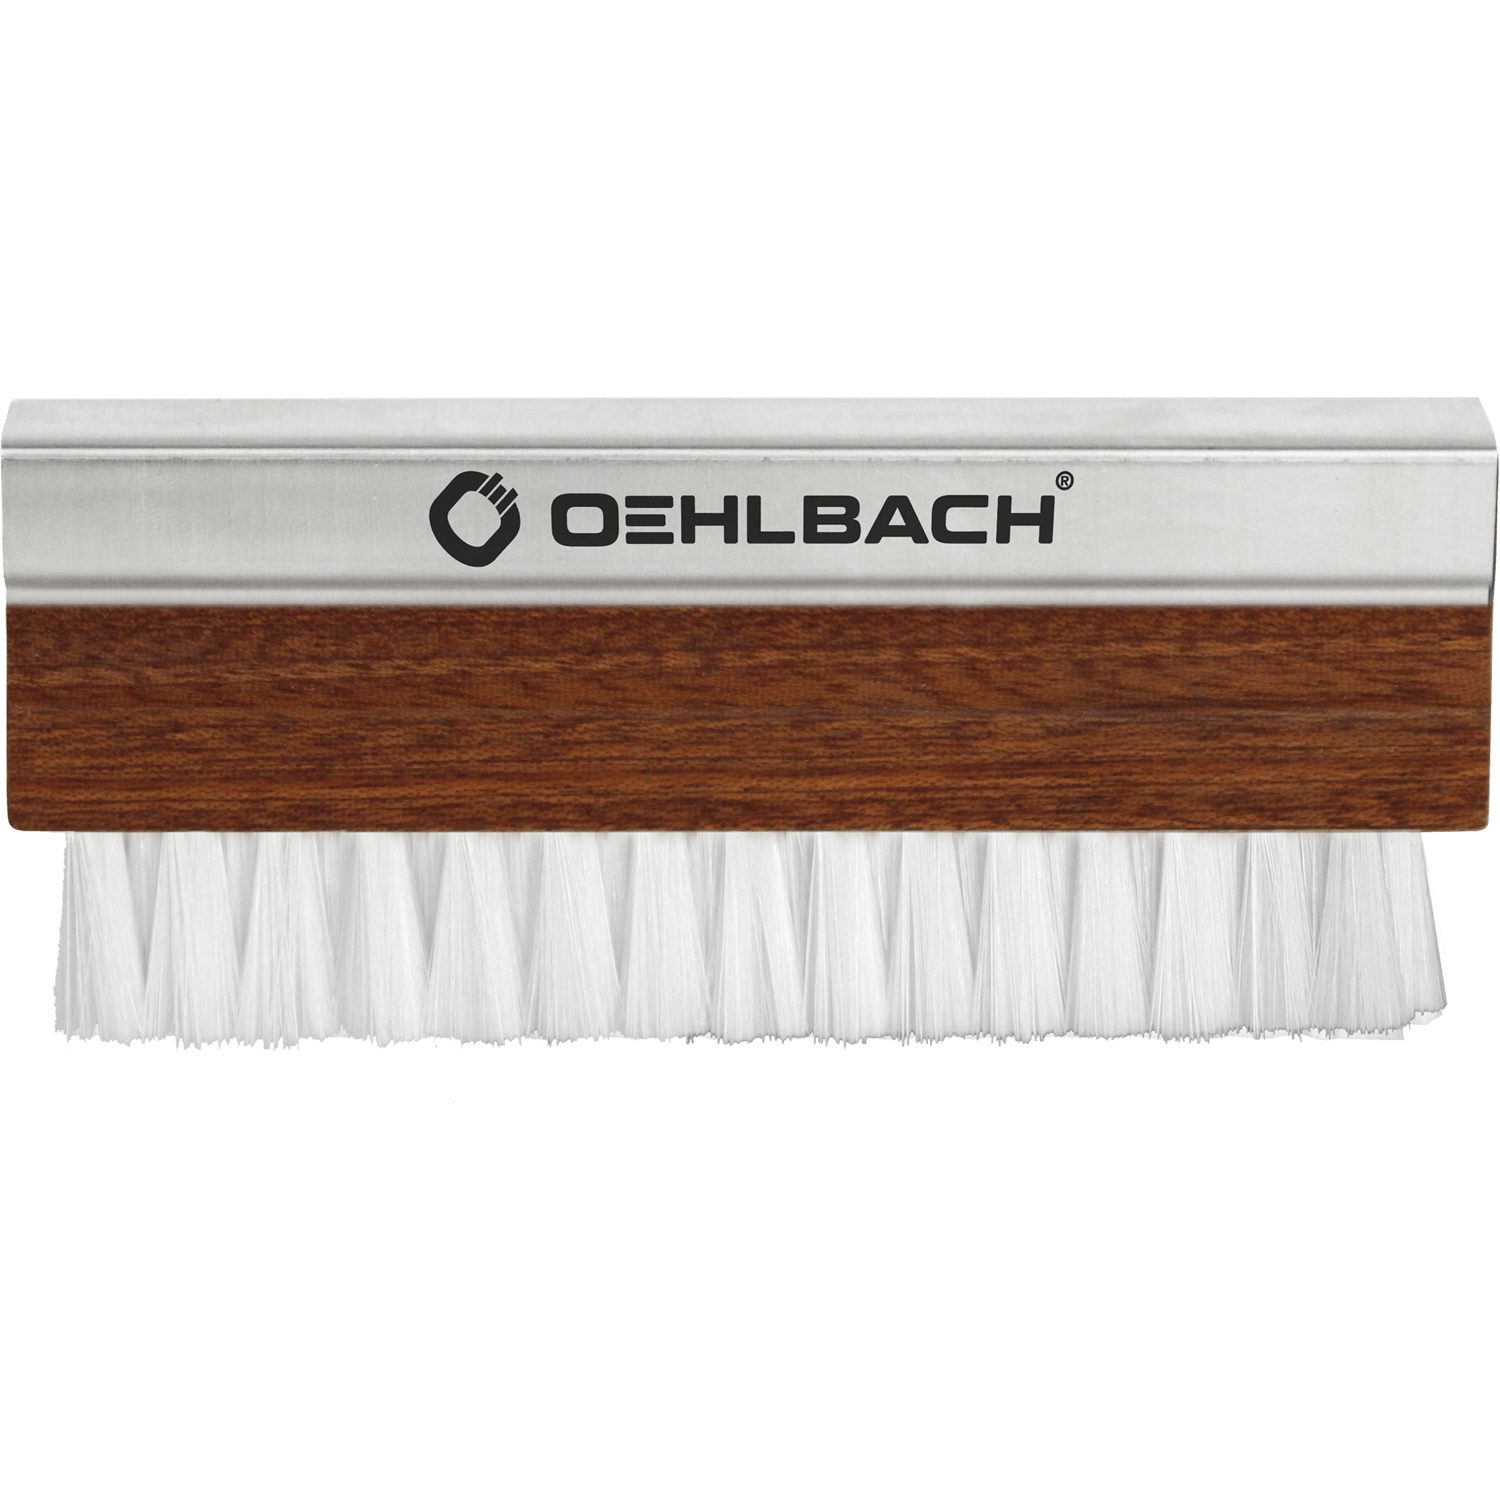 Pro 2614 Schallplattenbürste Plattenspieler Oehlbach Phono Brush